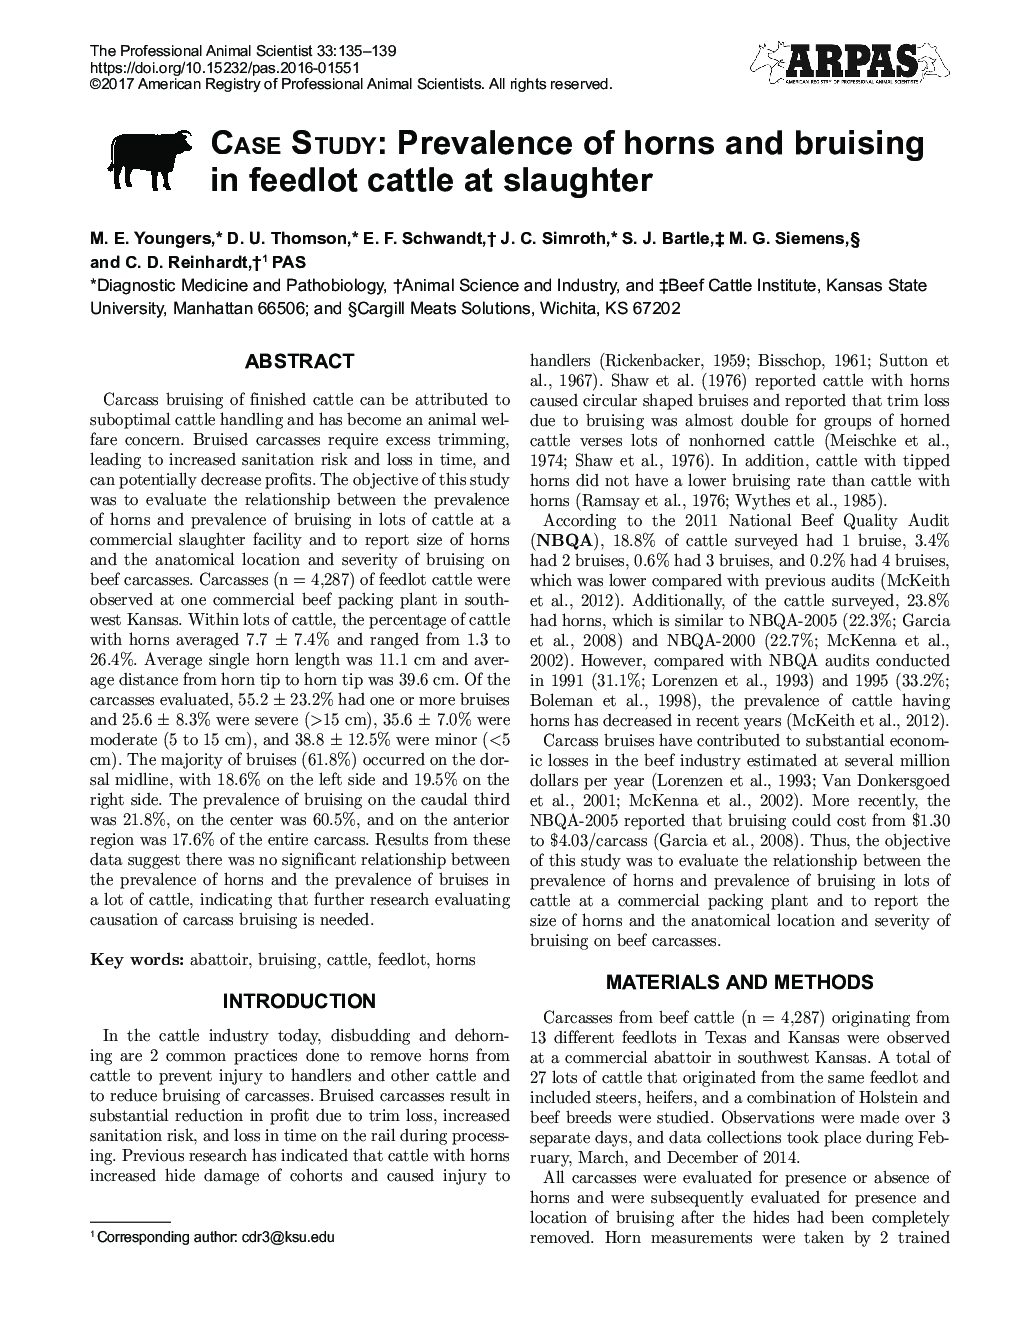 مطالعه موردی: شیوع شاخ و خونریزی در گاوهای خوراک دام در کشتارگاه 